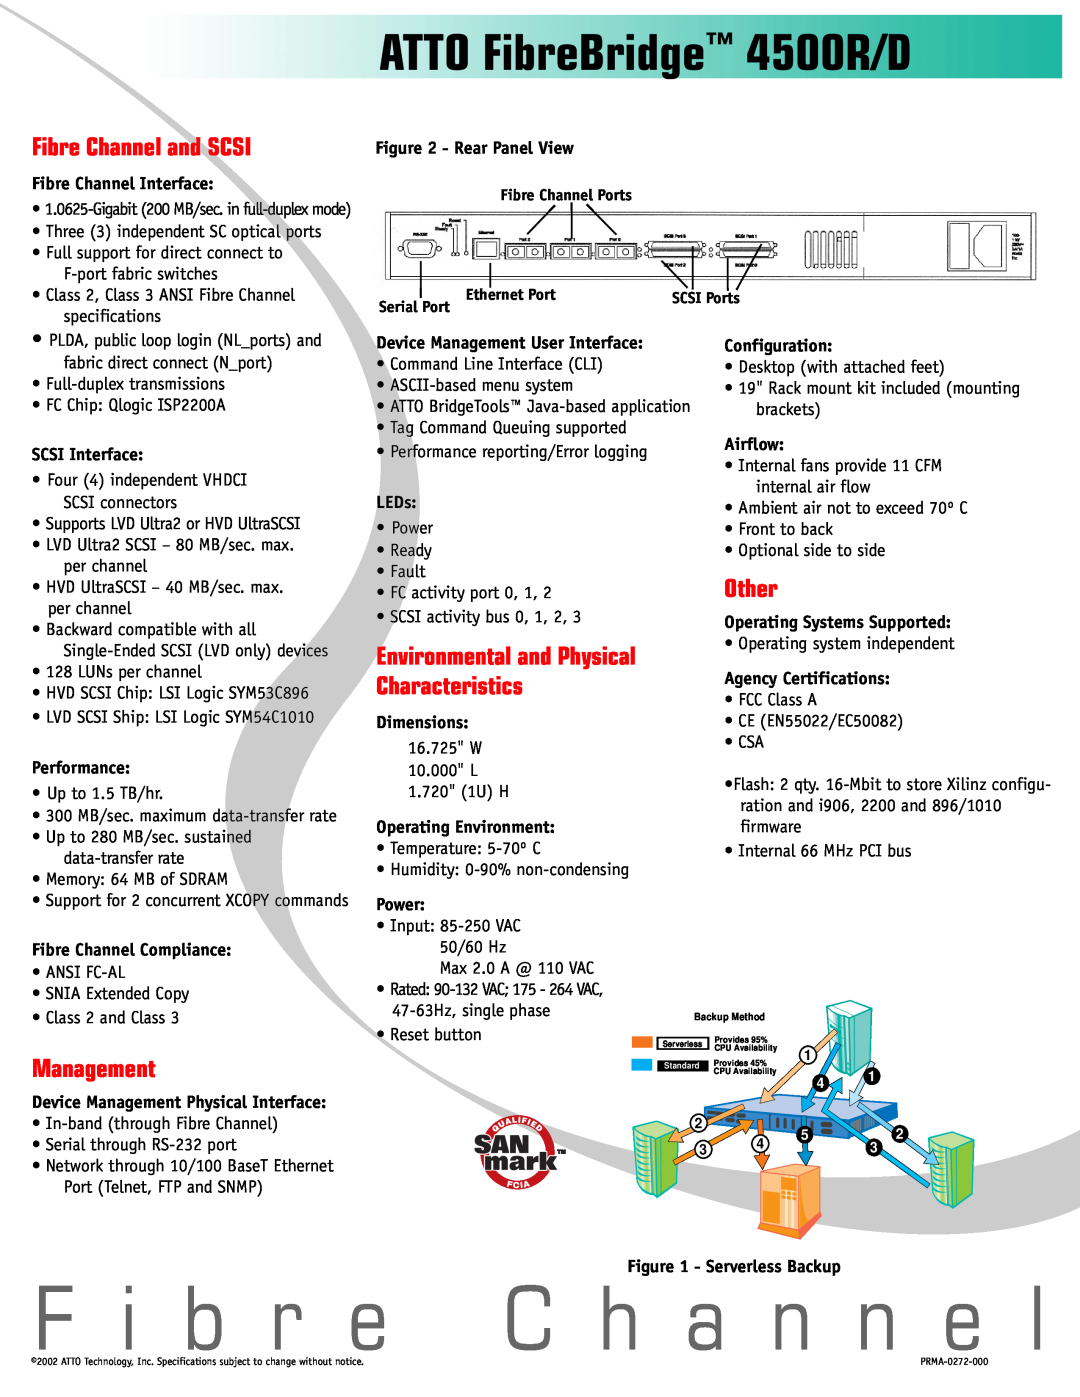 ATTO Technology manual F i b r e C h a n n e l, ATTO FibreBridge 4500R/D, Fibre Channel and SCSI, Management, Other 